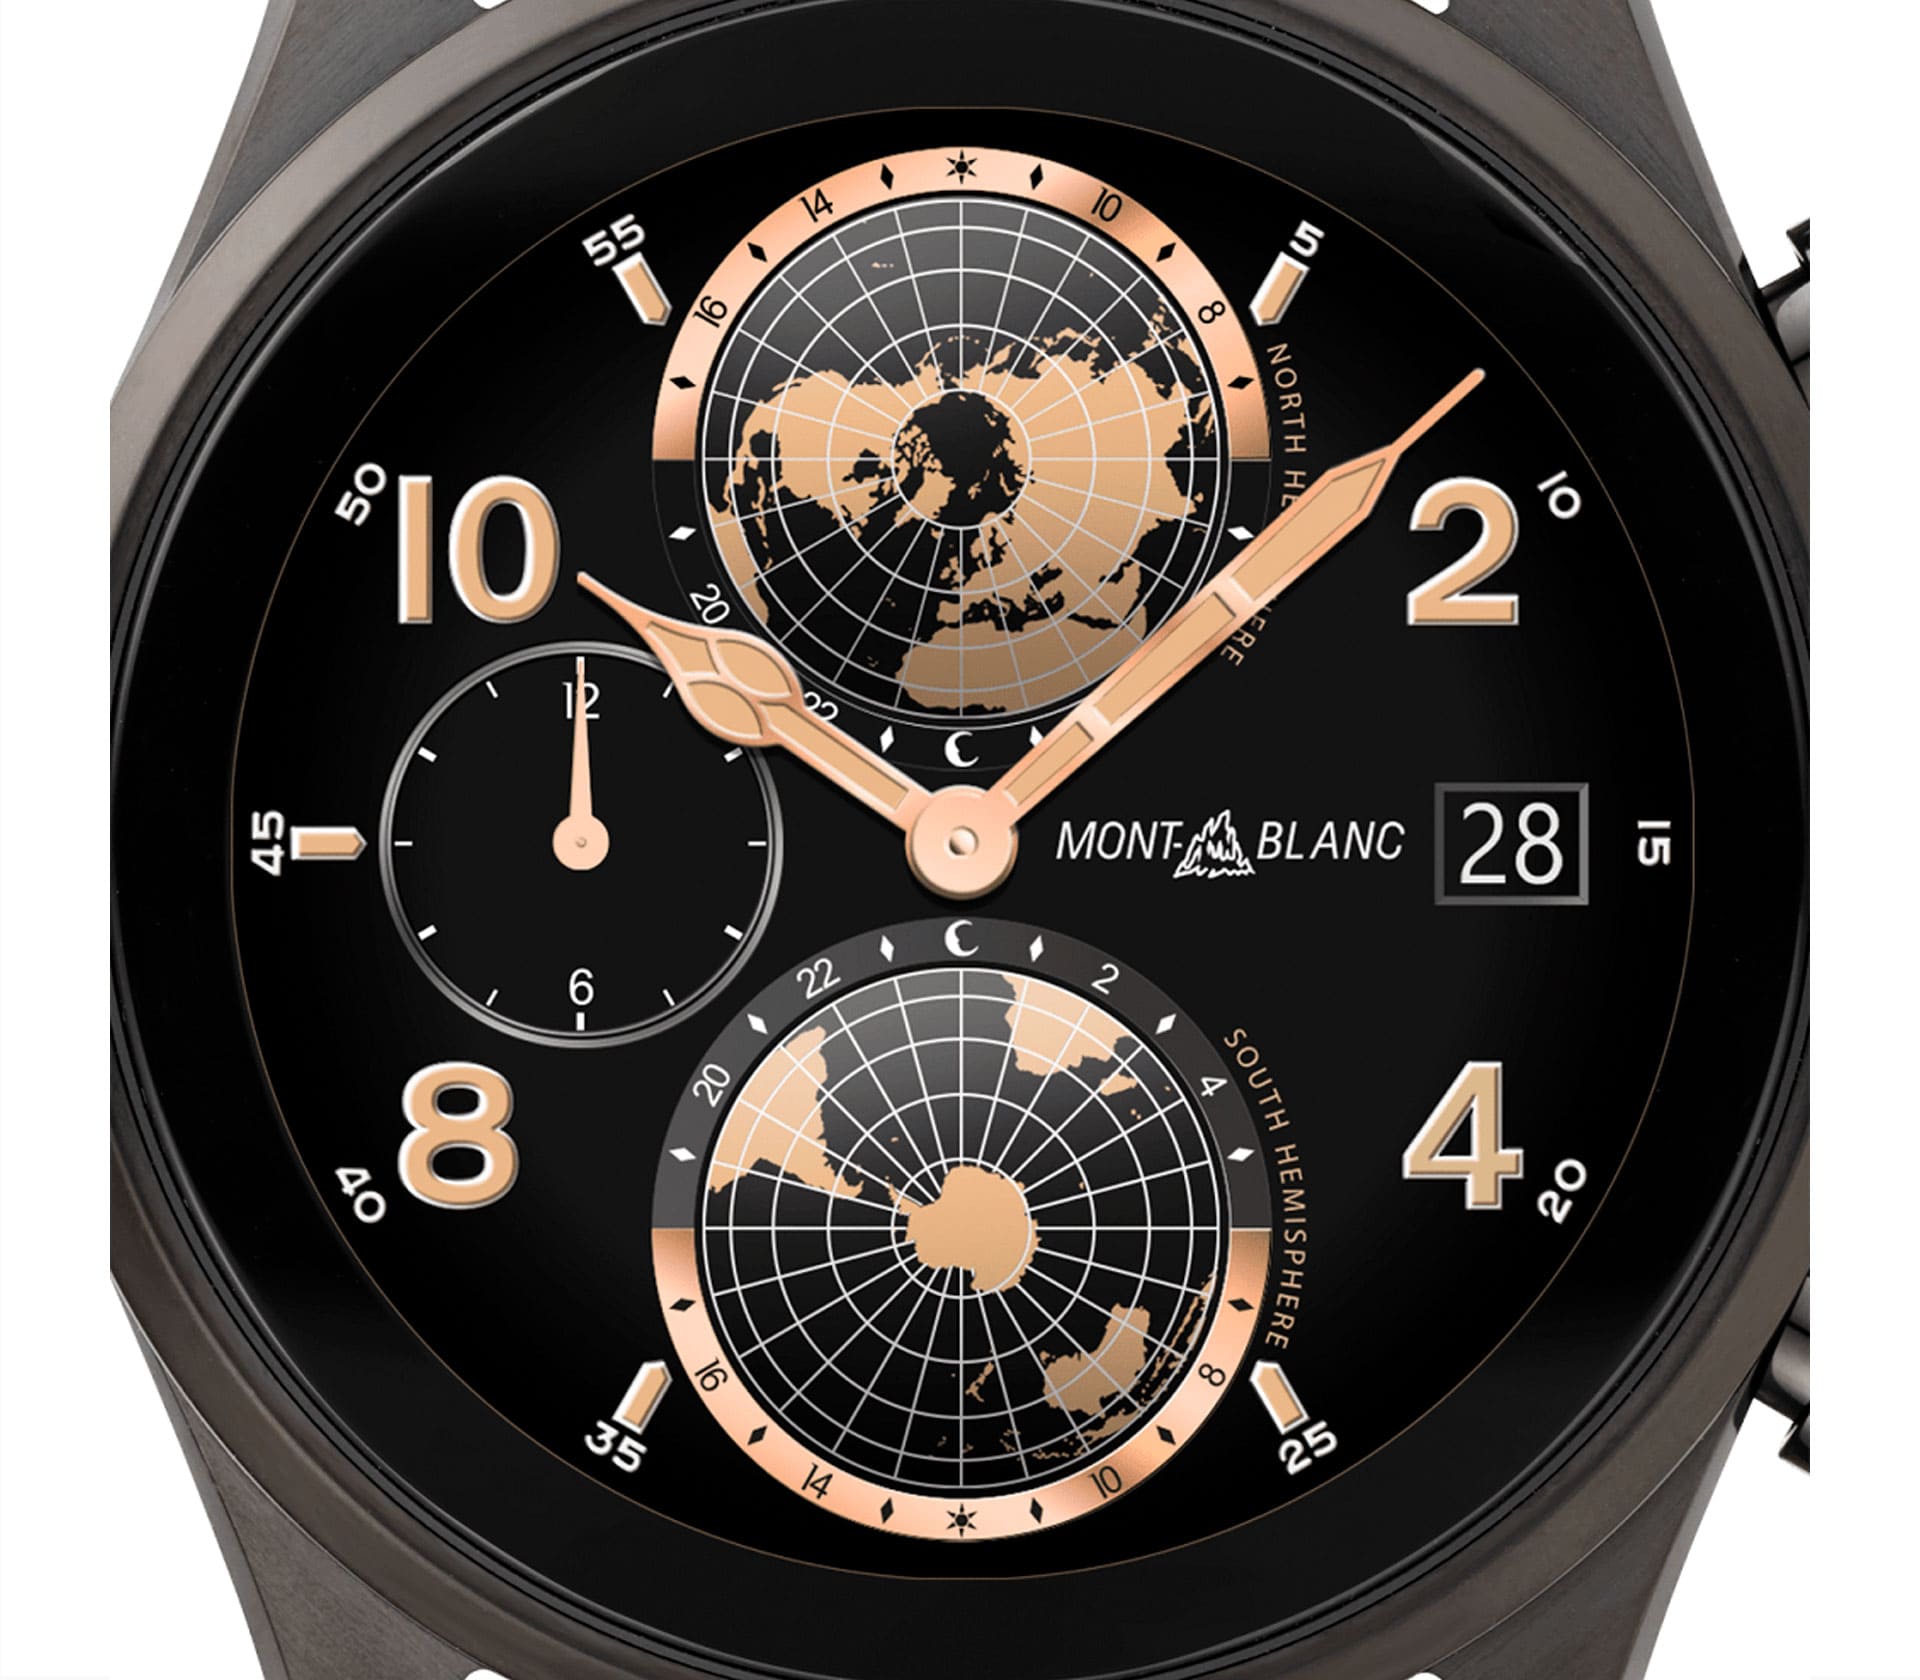 Summit 3 Smartwatch - Caixa em Titânio Preto e 2 pulseiras